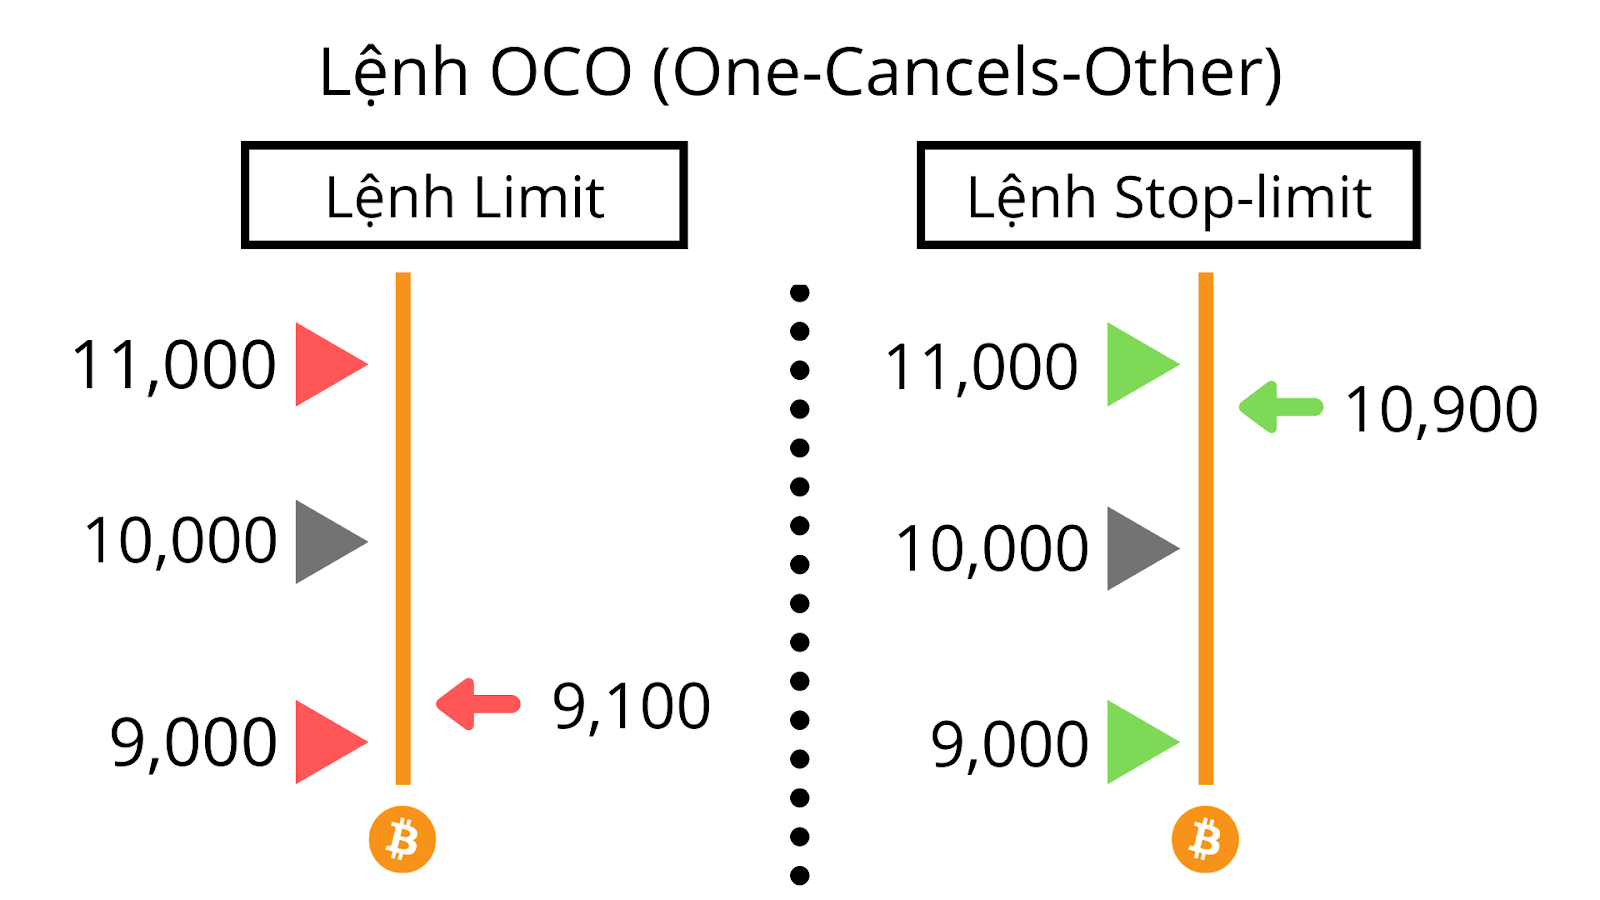 lenh-oco-2